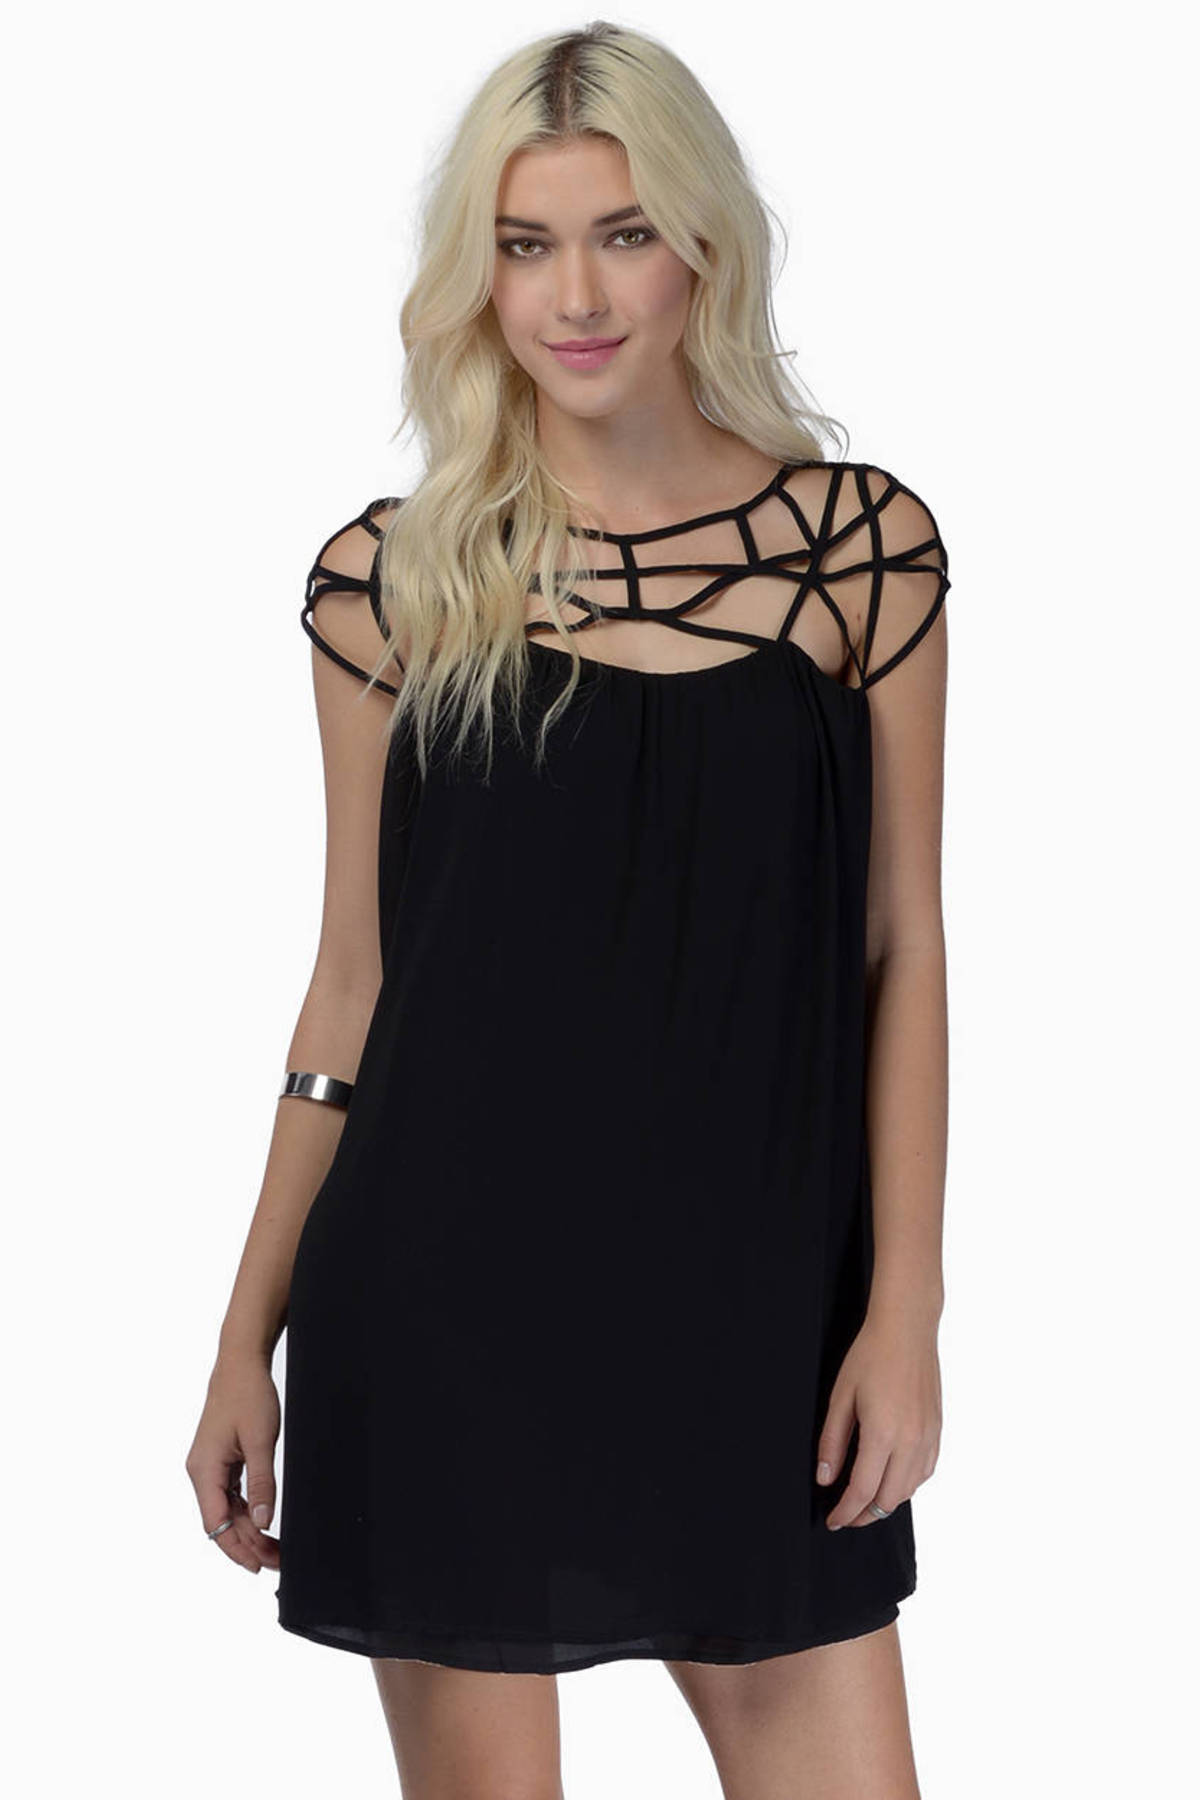 Fill In The Blank Dress in Black - $24 | Tobi US